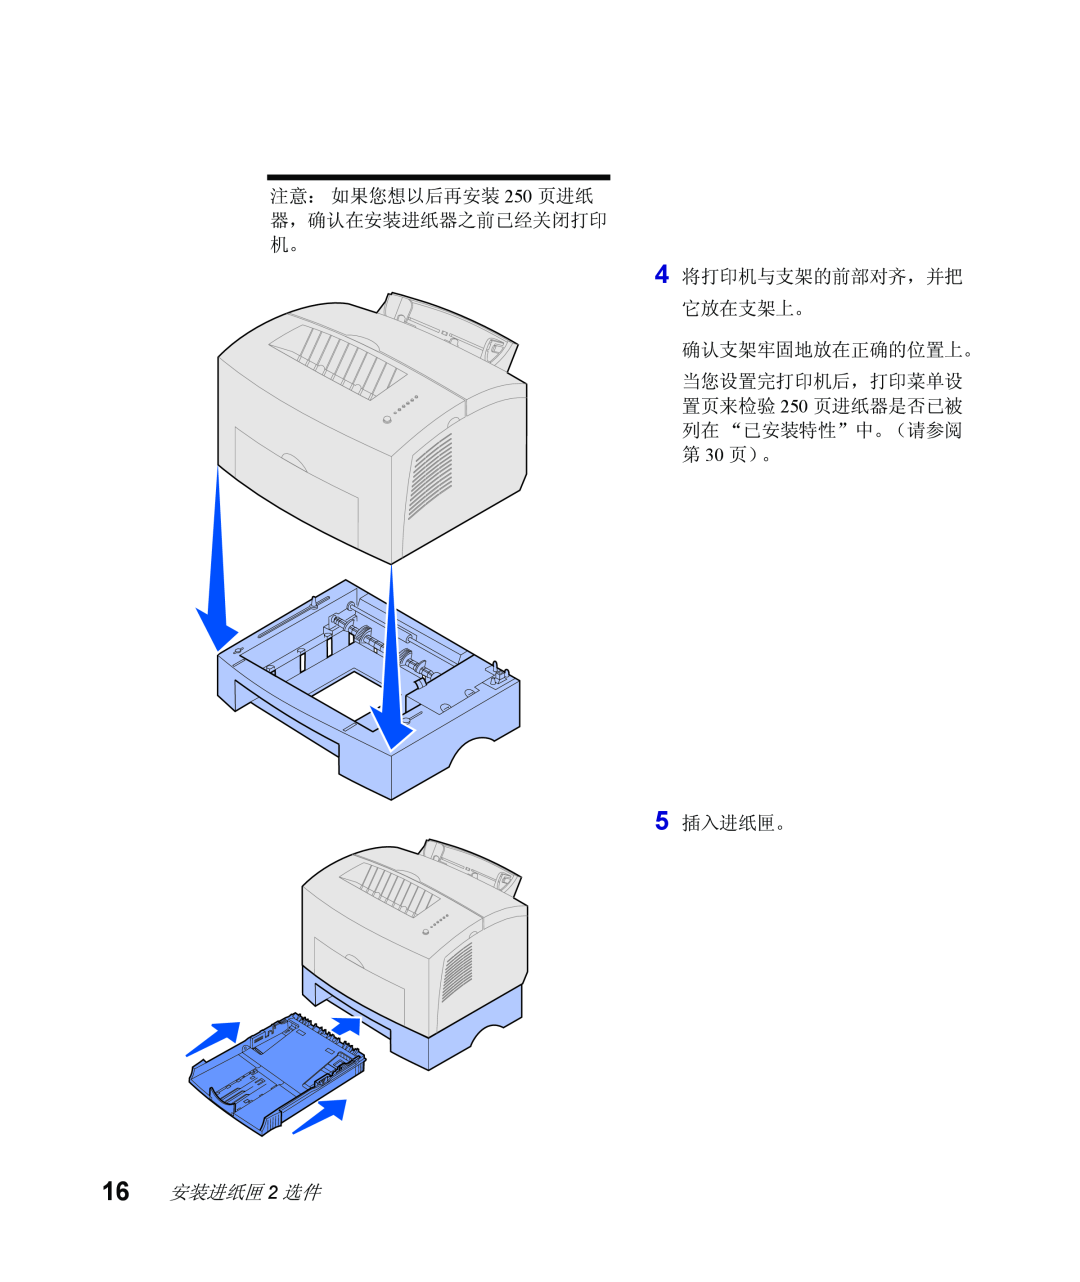 Lexmark Infoprint 1116 setup guide 注意： 如果您想以后再安装 250 页进纸 器，确认在安装进纸器之前已经关闭打印 机。 4 将打印机与支架的前部对齐，并把 它放在支架上。, 确认支架牢固地放在正确的位置上。 